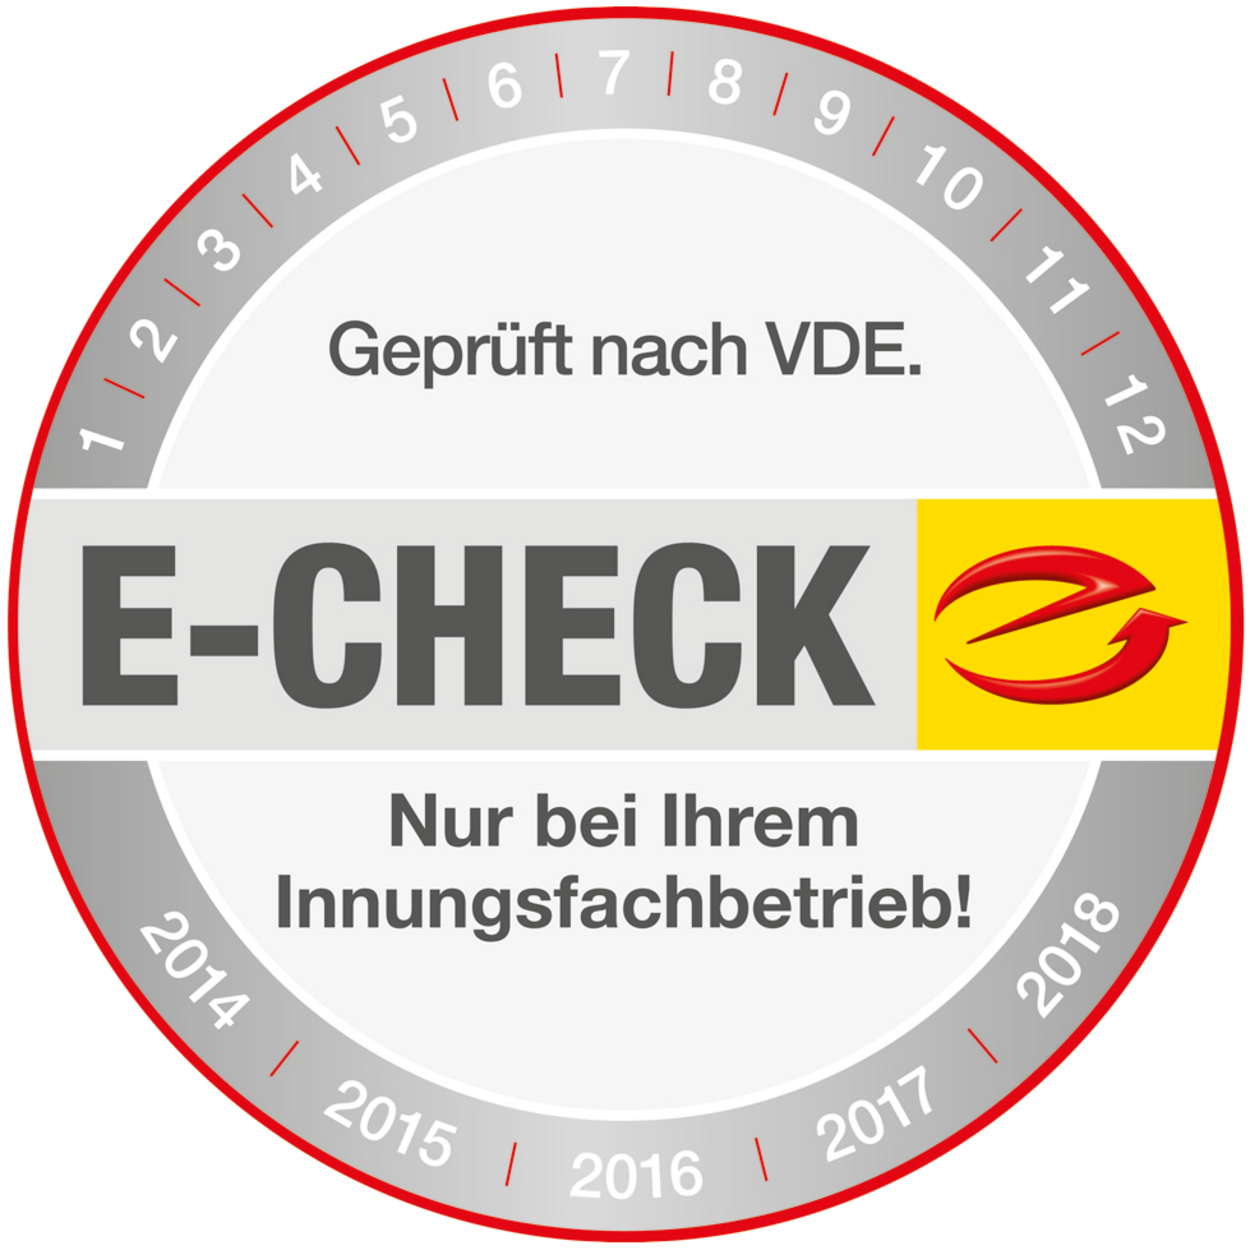 Der E-Check bei Remo Heyde Elektroinstallation & Service in Tröbitz